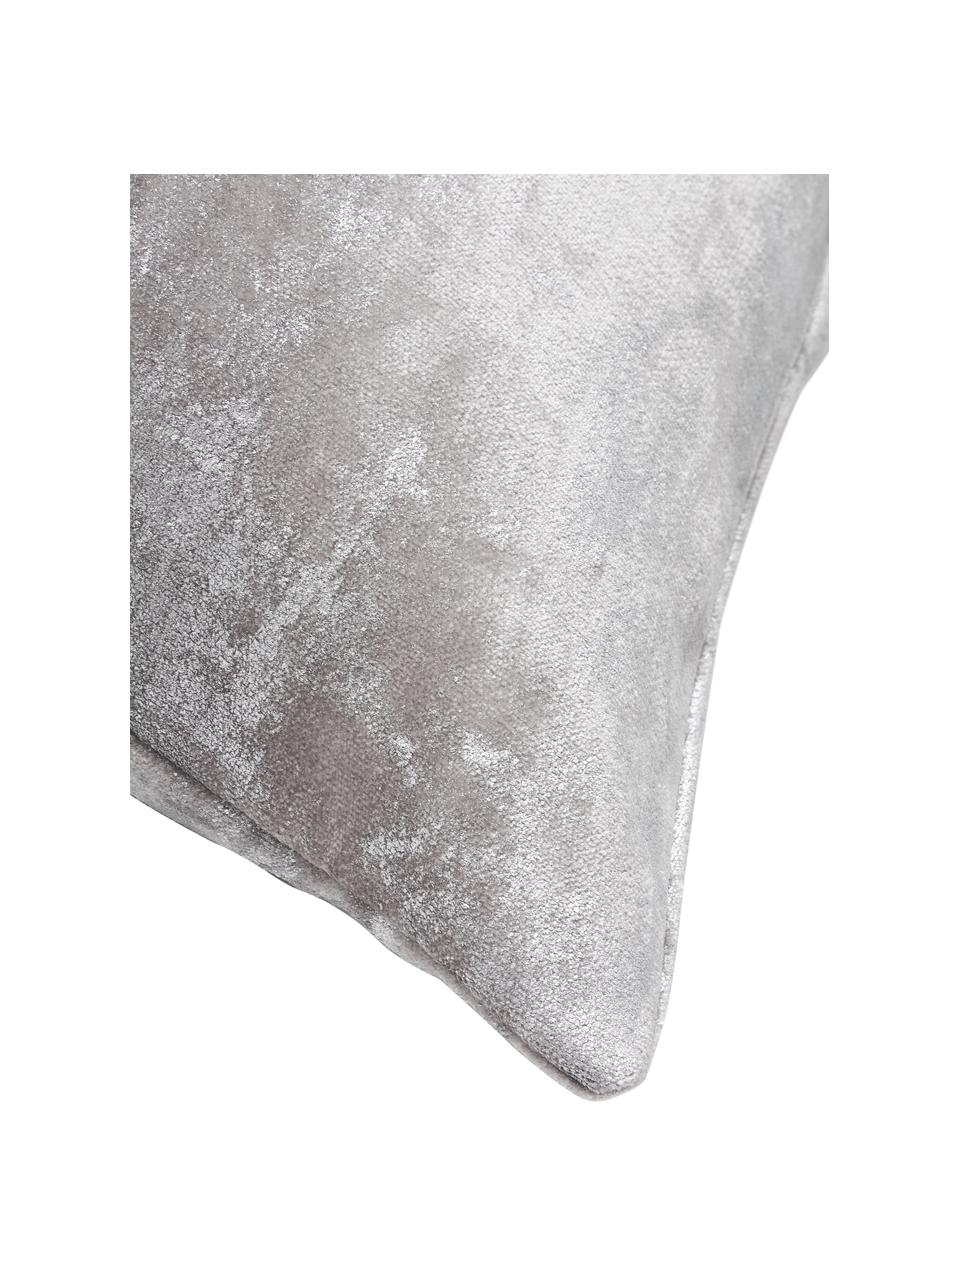 Fluwelen kussenhoes Shiny met glinsterend vintage patroon, 100% polyester fluweel, Grijs, zilverkleurig, B 40 x L 40 cm